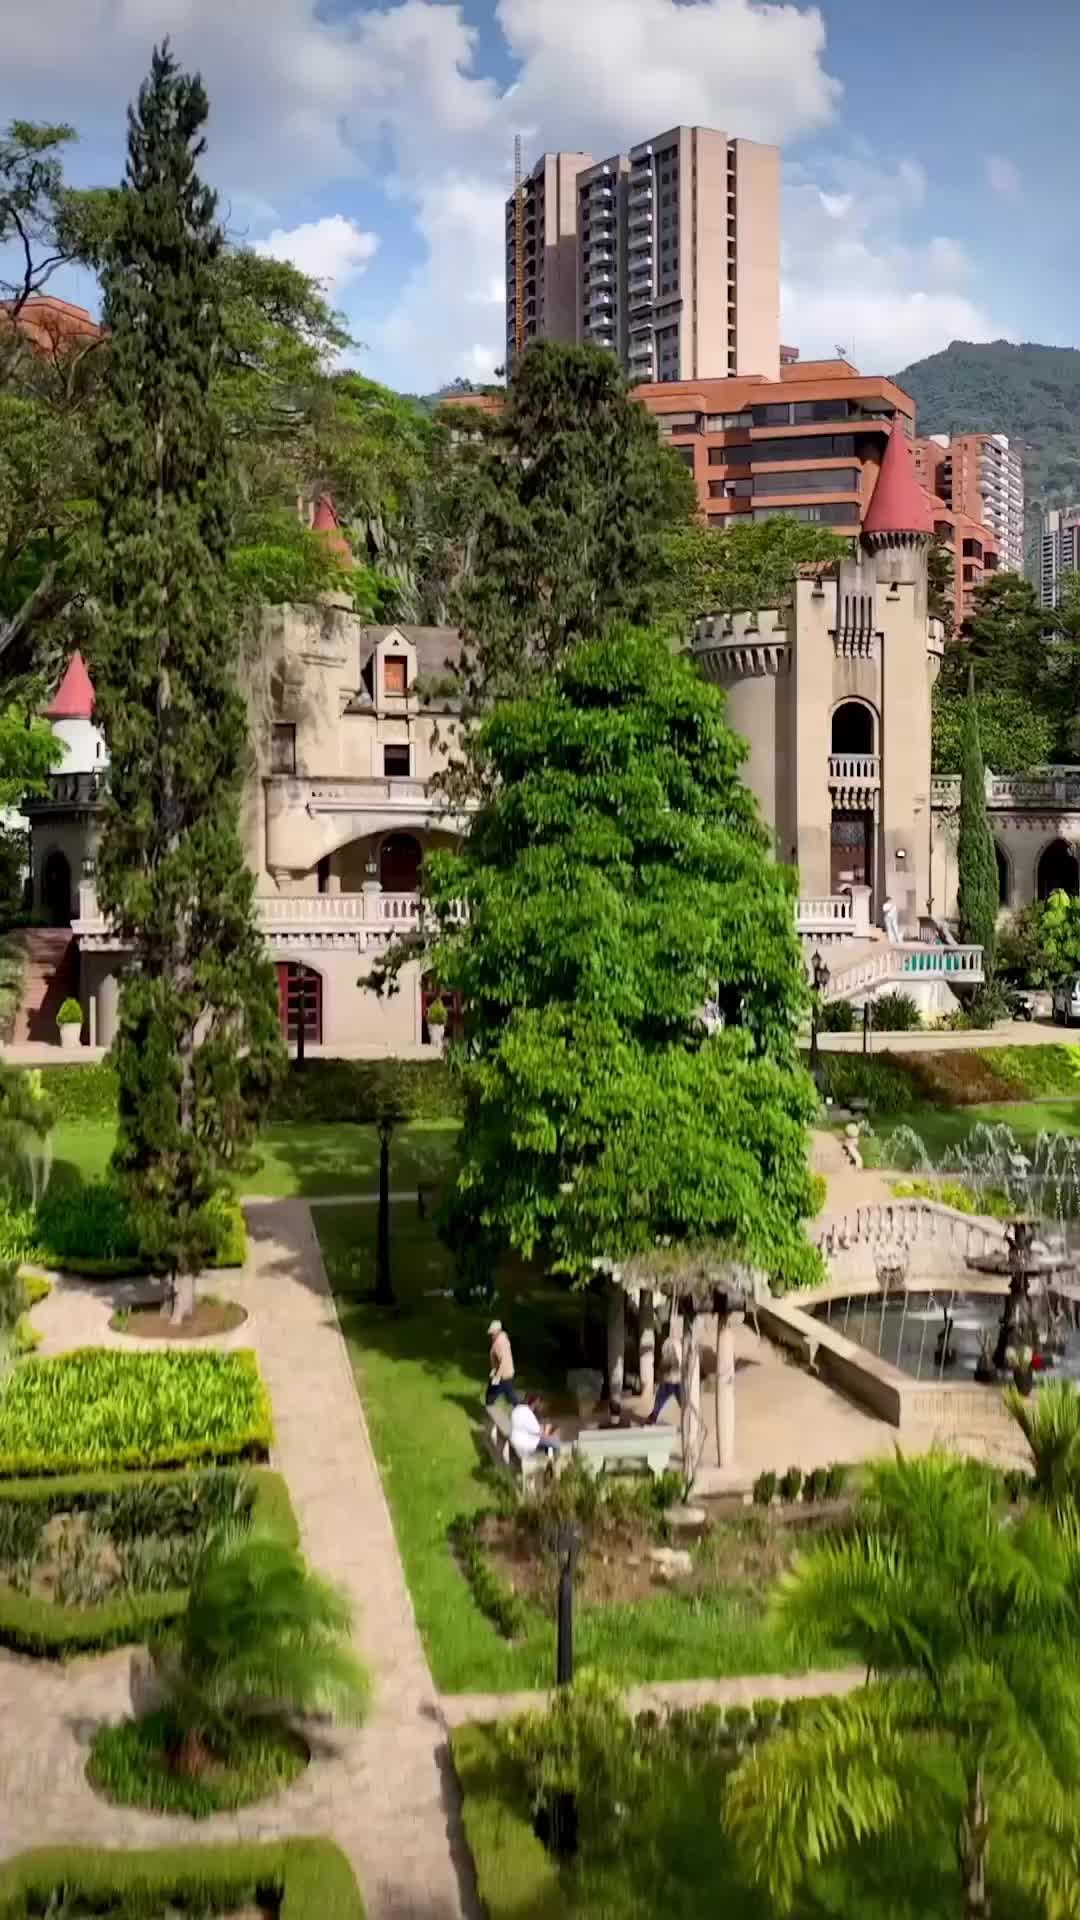 Discover Museo El Castillo in Medellin, Colombia